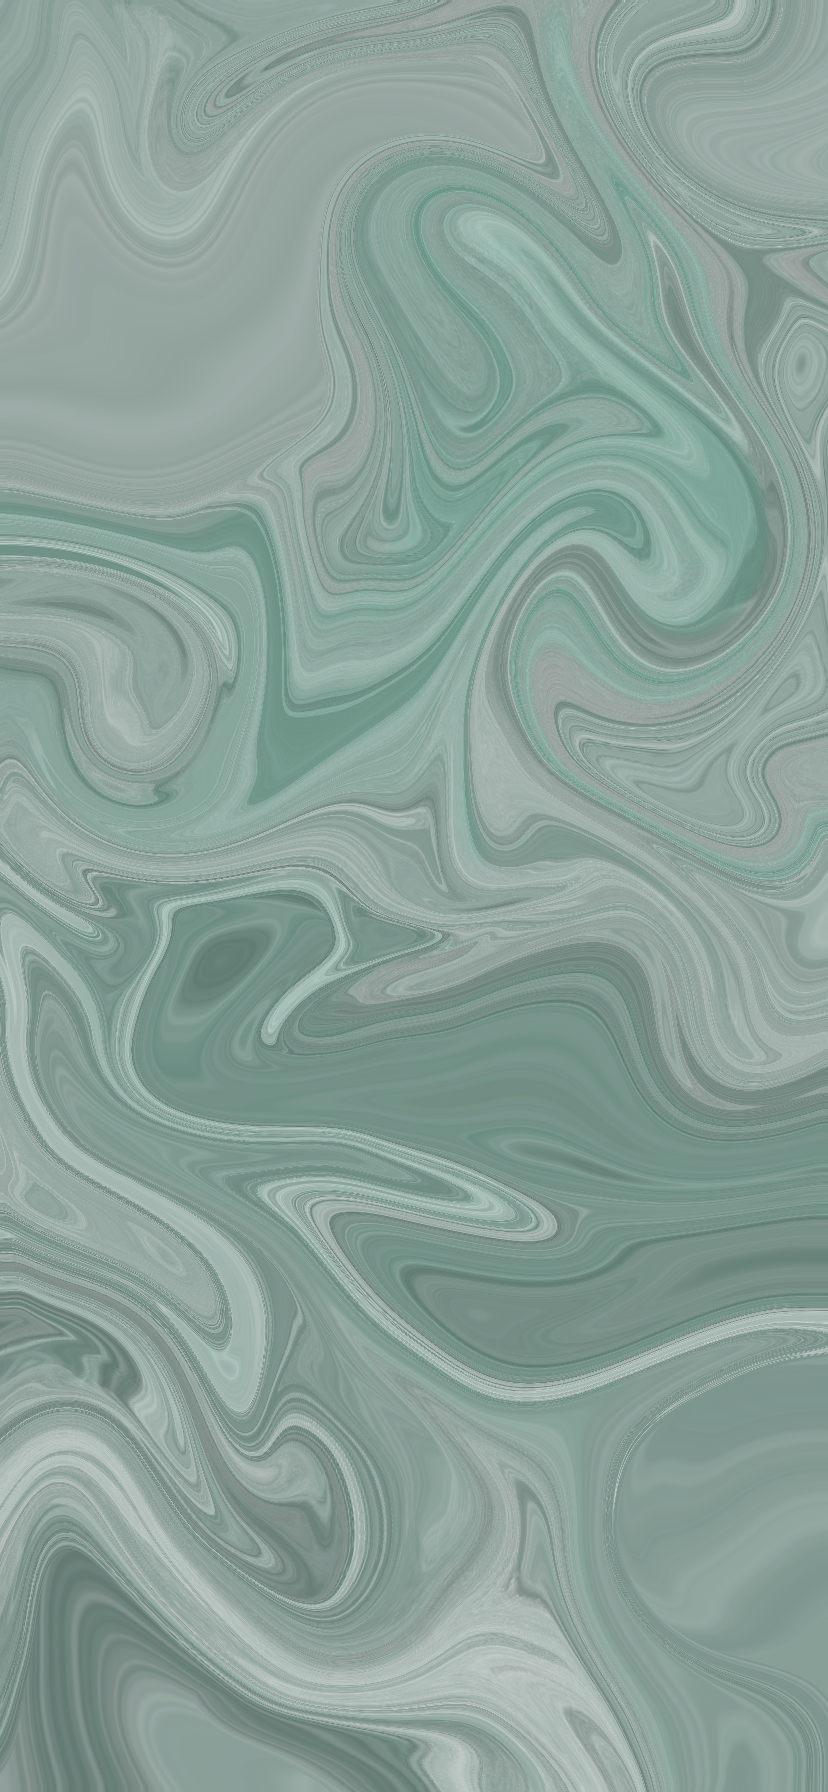 25+] Green Marble iPhone Wallpapers - WallpaperSafari